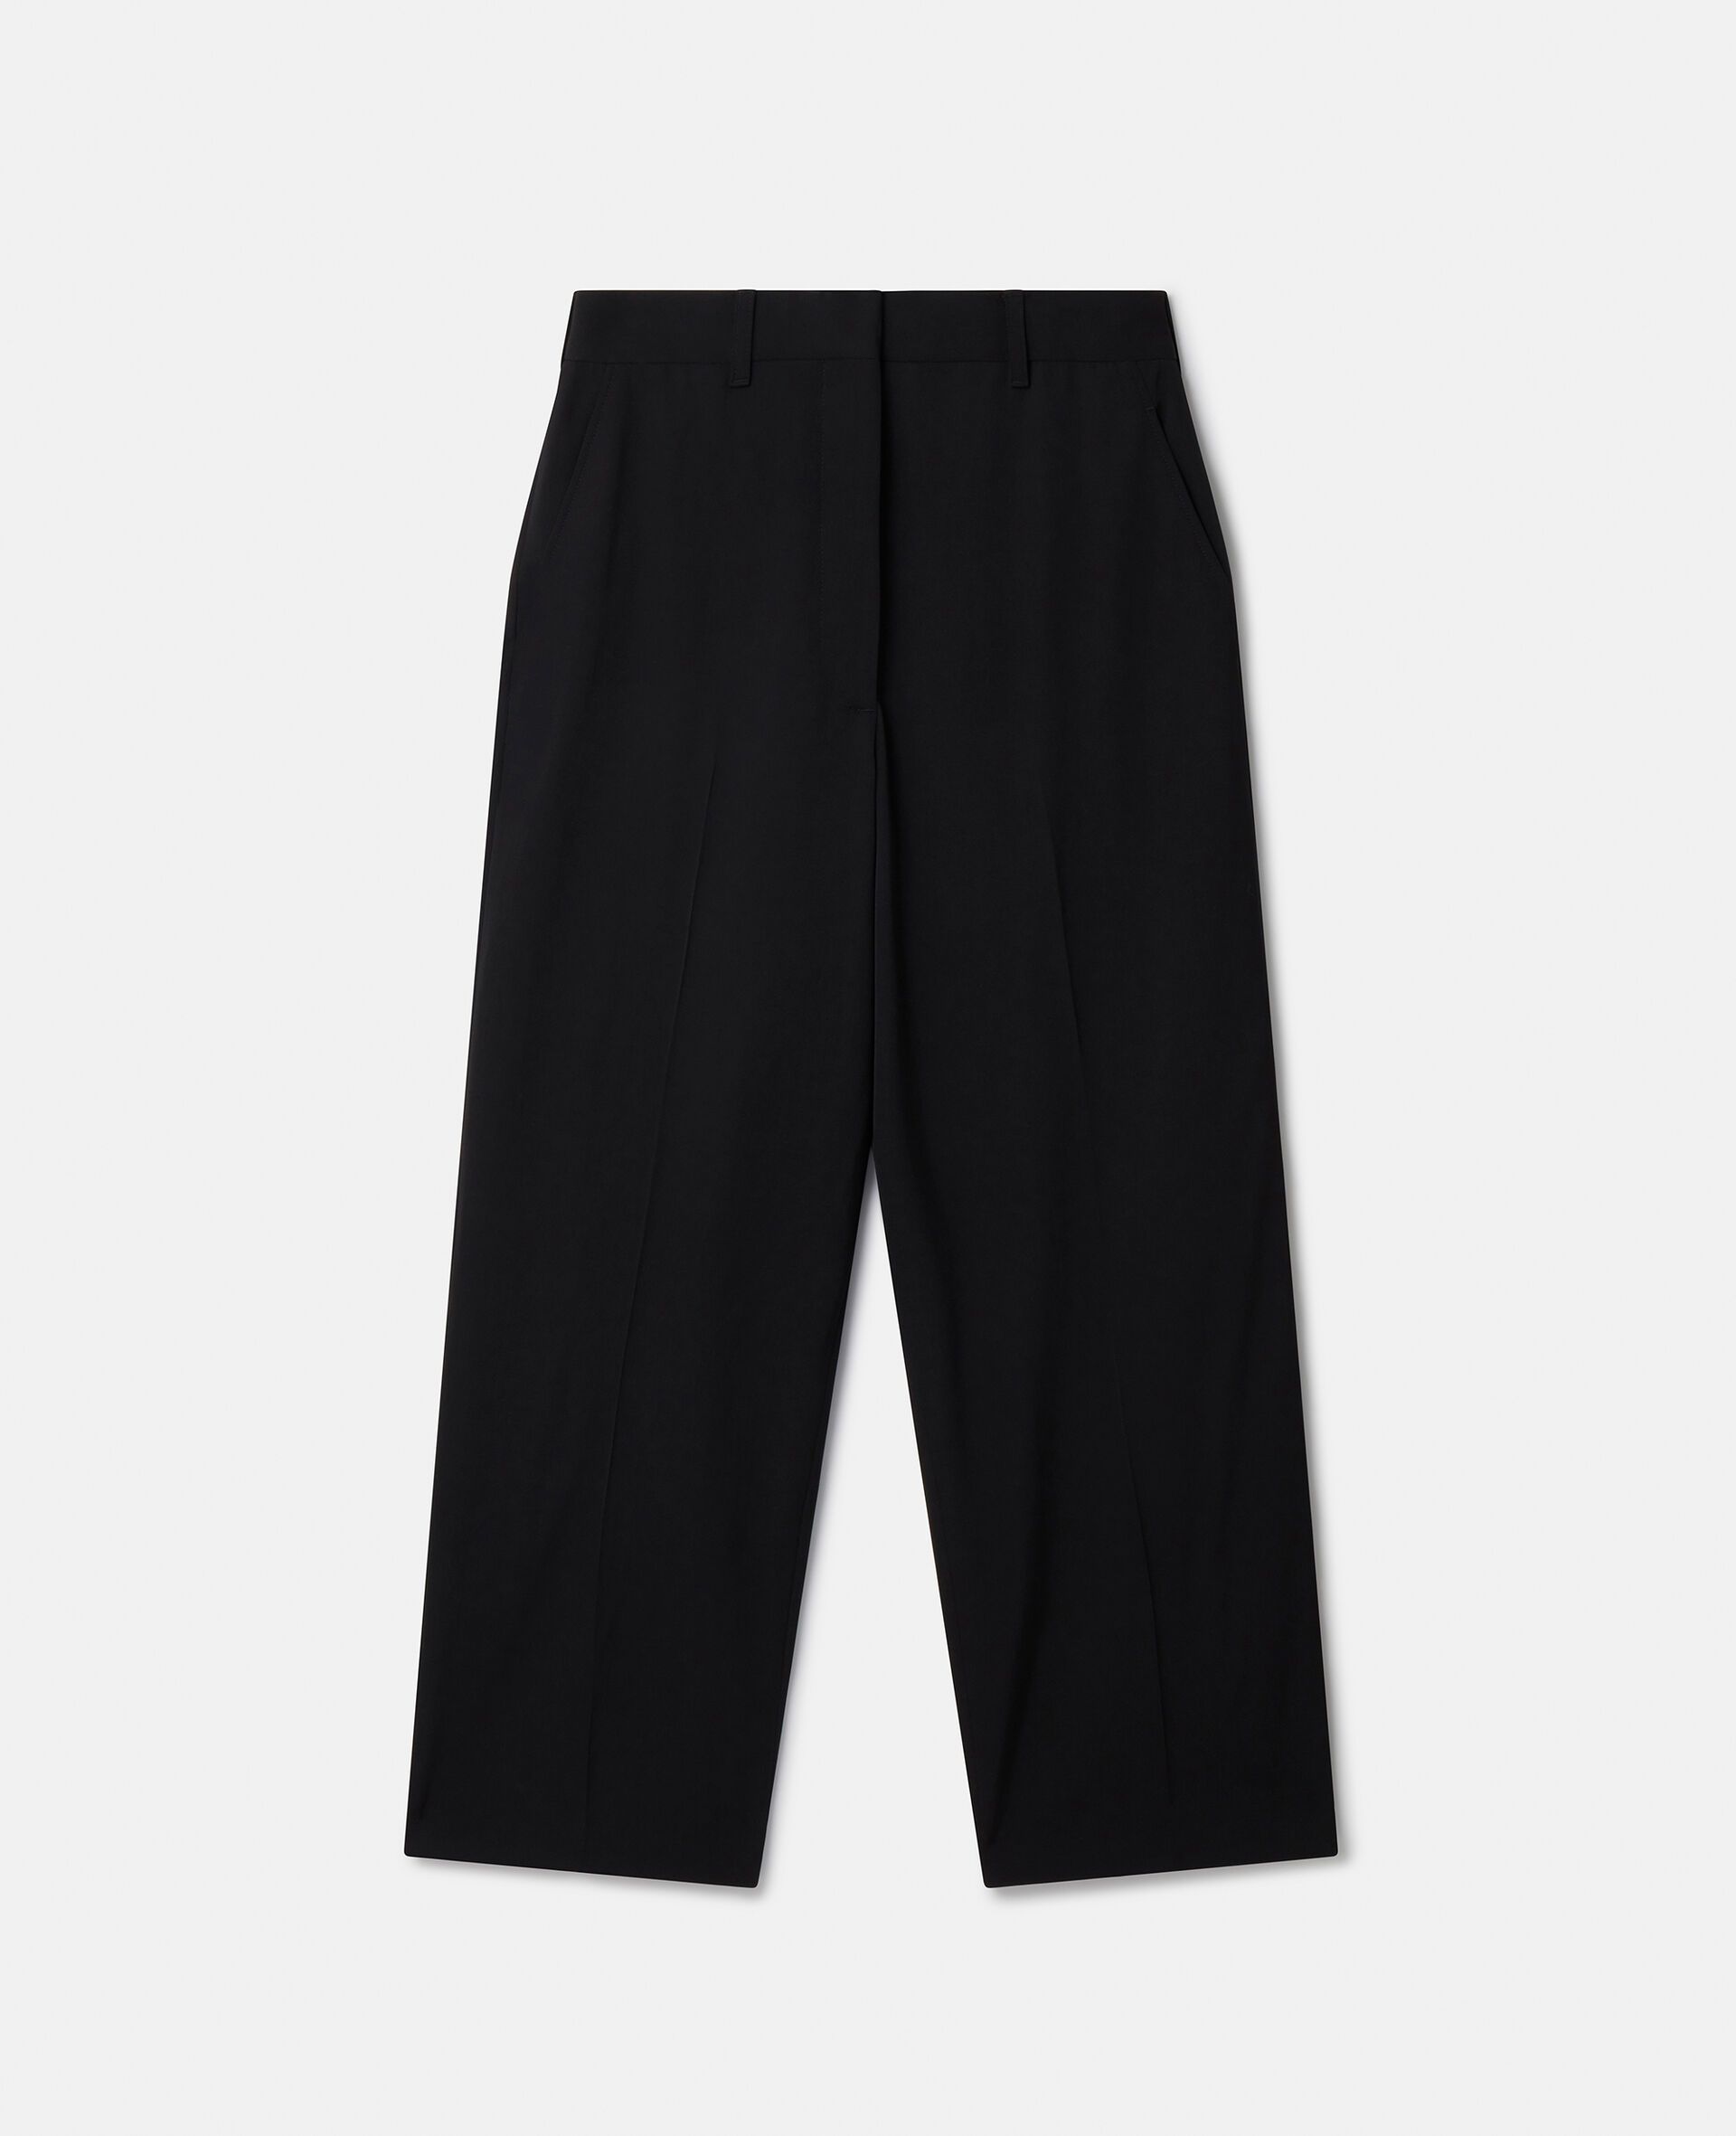 Pantalon de tailleur court en laine-Noir-large image number 0